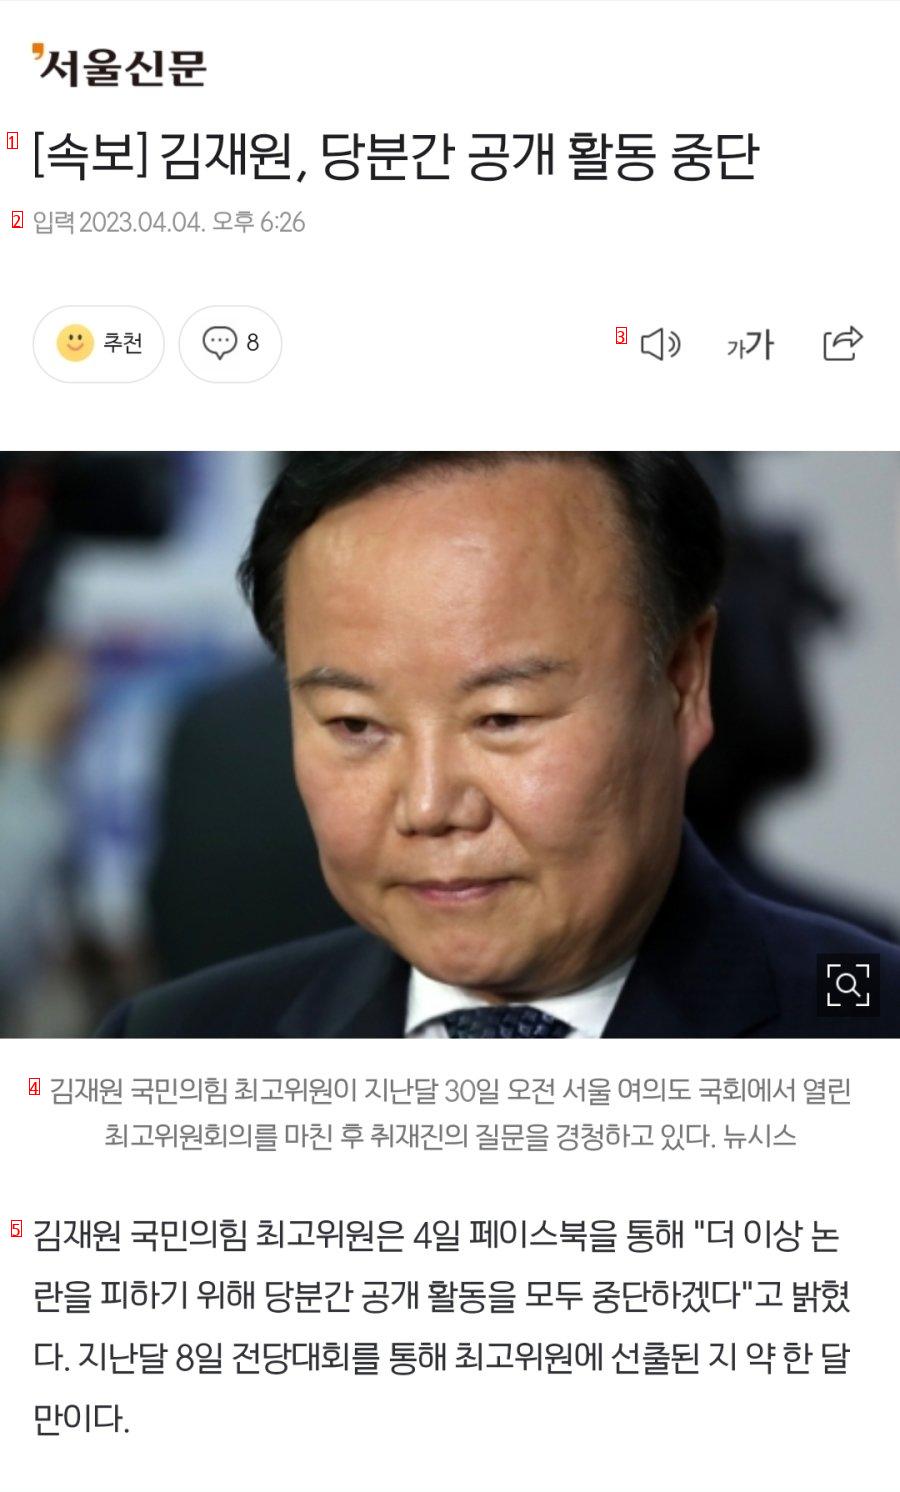 [속보] 김재원, 당분간 공개 활동 중단